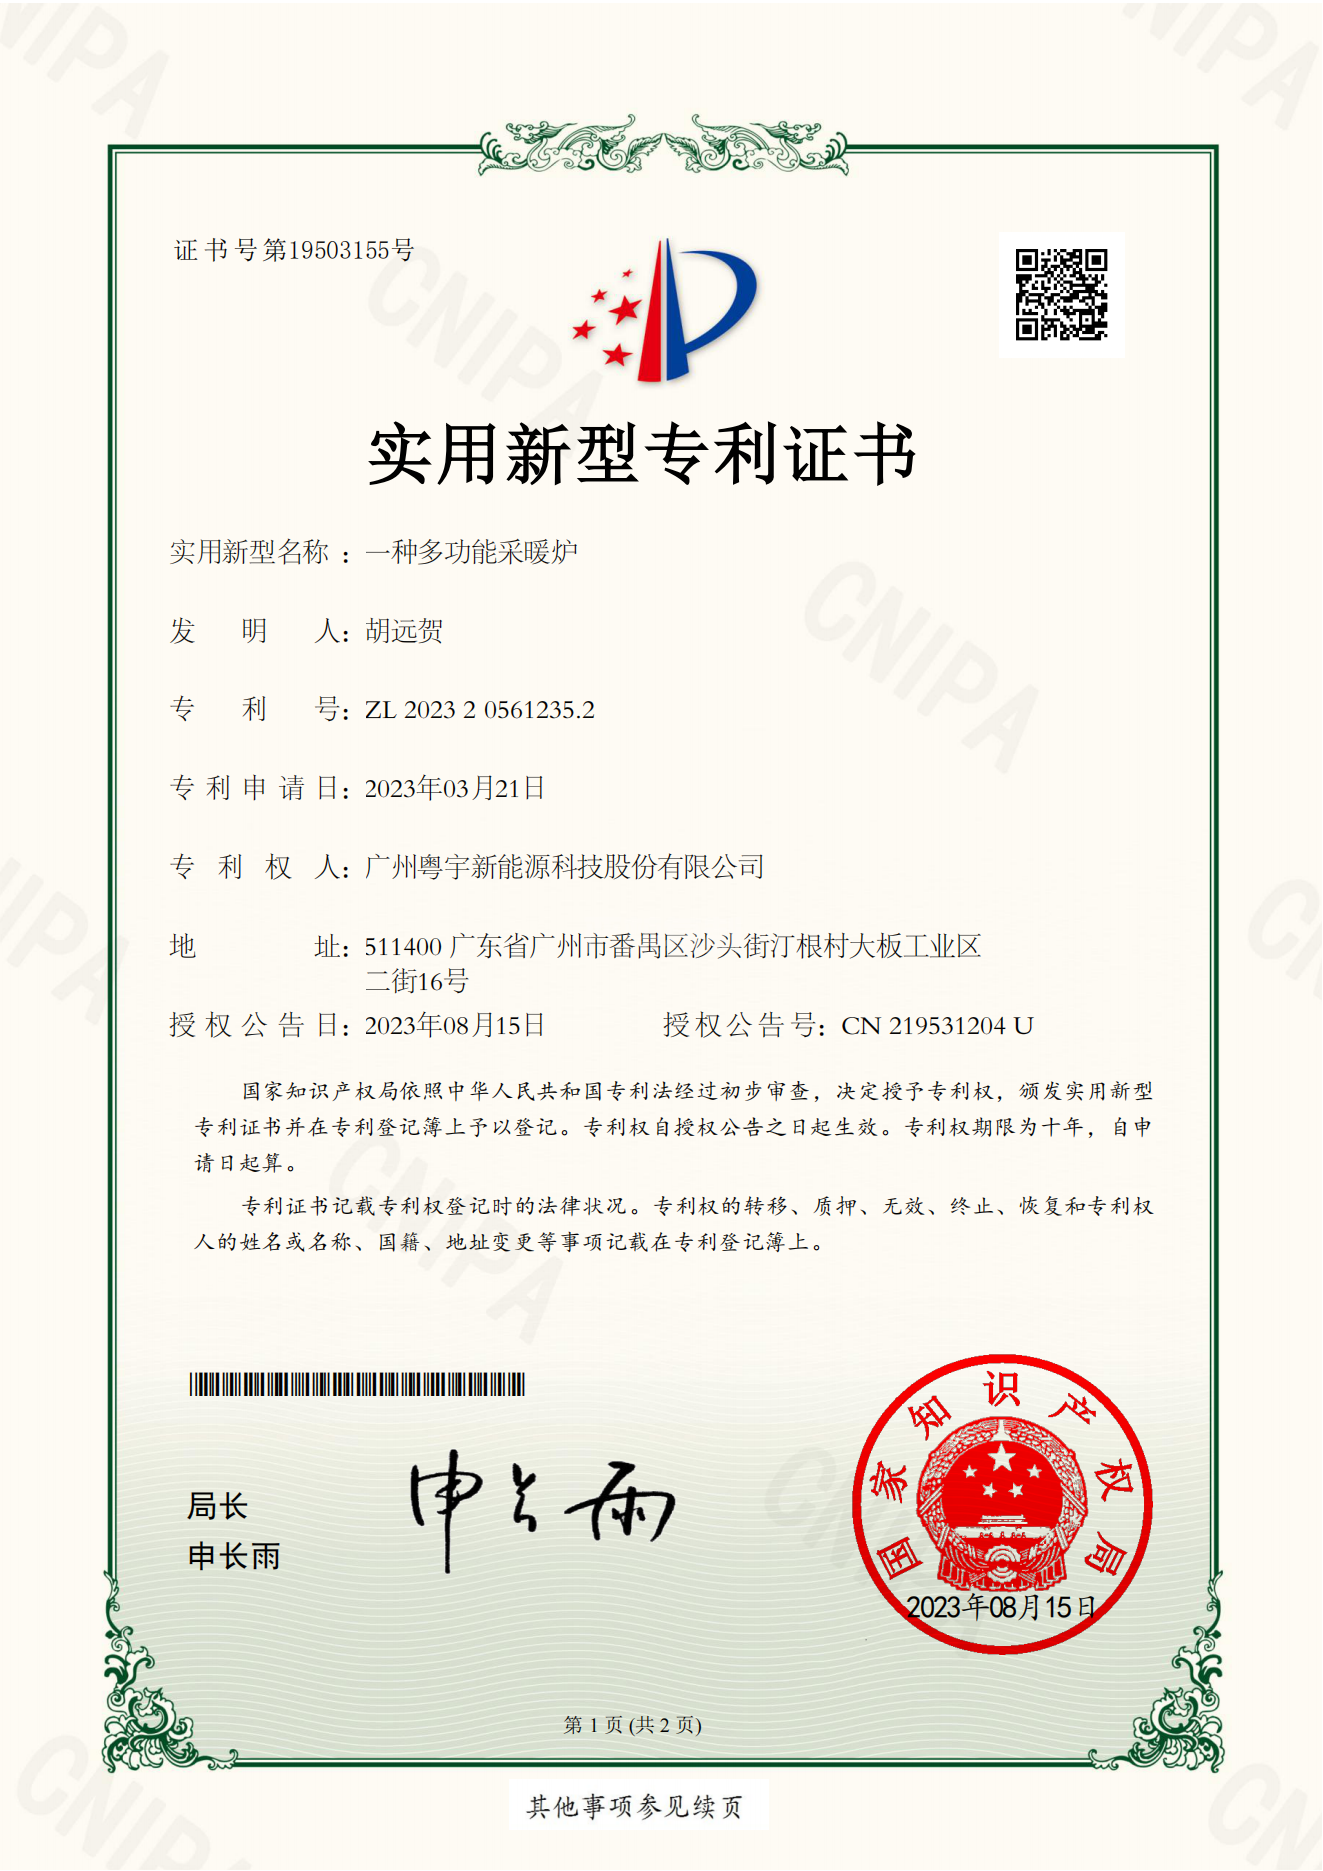 1_广州粤宇新能源科技股份有限公司-实用证书-一种多功能采暖炉-2023205612352(1)_00.png